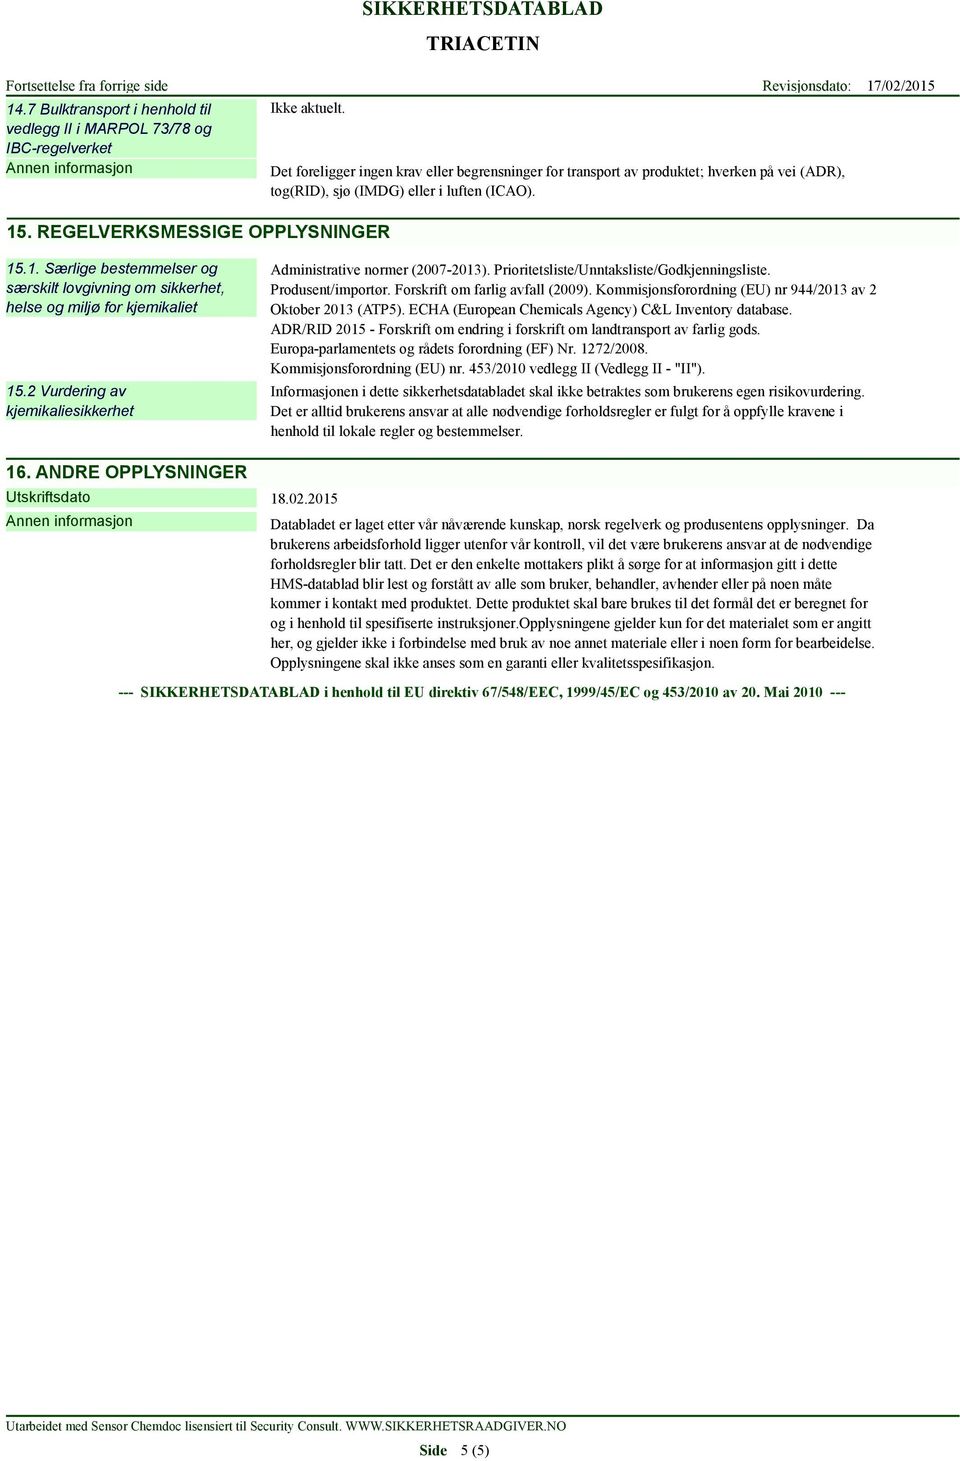 .1. Særlige bestemmelser og særskilt lovgivning om sikkerhet, helse og miljø for kjemikaliet 15.2 Vurdering av kjemikaliesikkerhet Administrative normer (2007-2013).